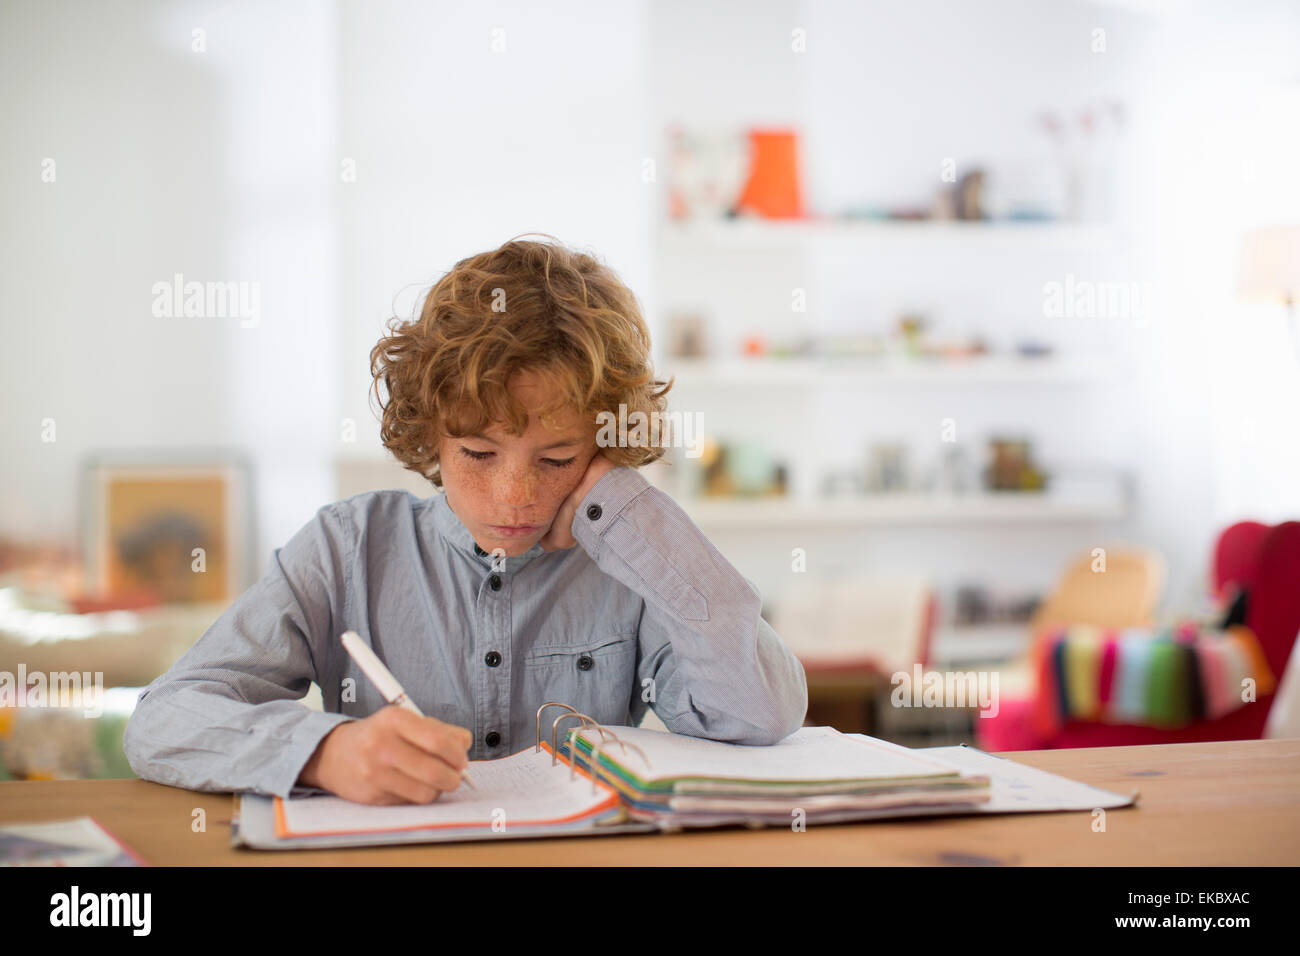 Teenage boy studying et rédaction de notes Banque D'Images